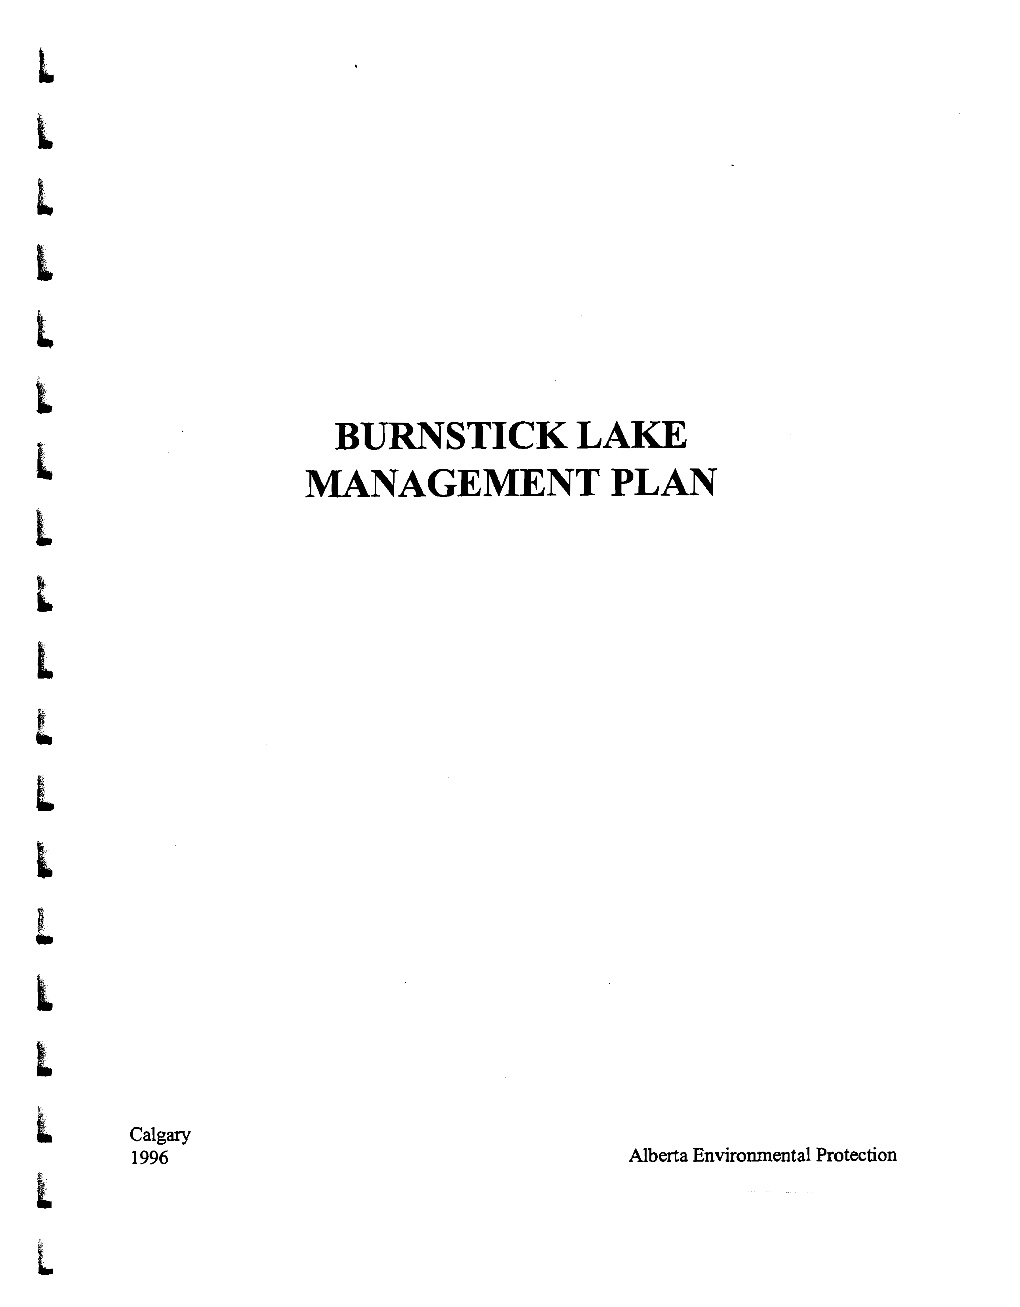 Burnstick Lake Management Plan